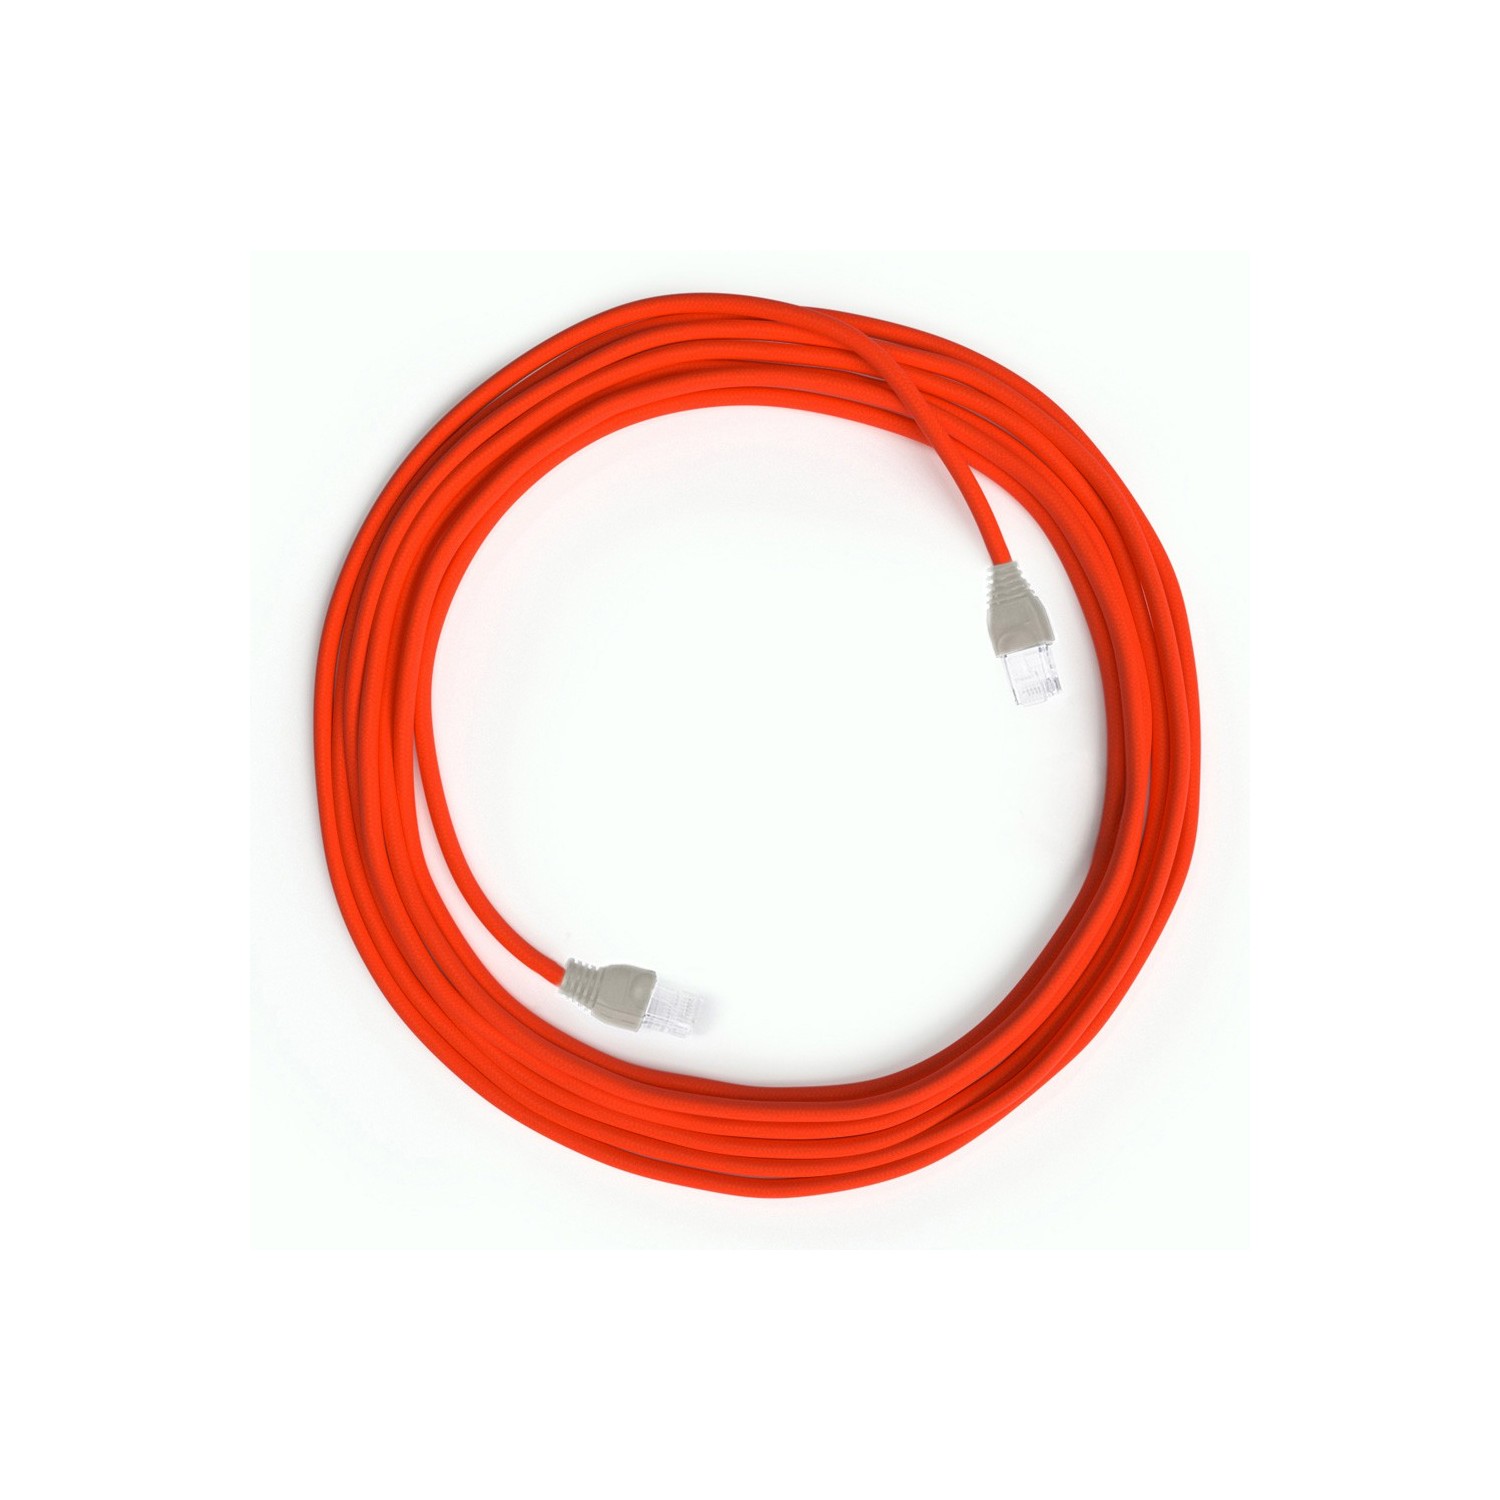 Cable LAN - Ethernet Textil RF15 Naranja Fluorescente - Cat 5e - RJ45